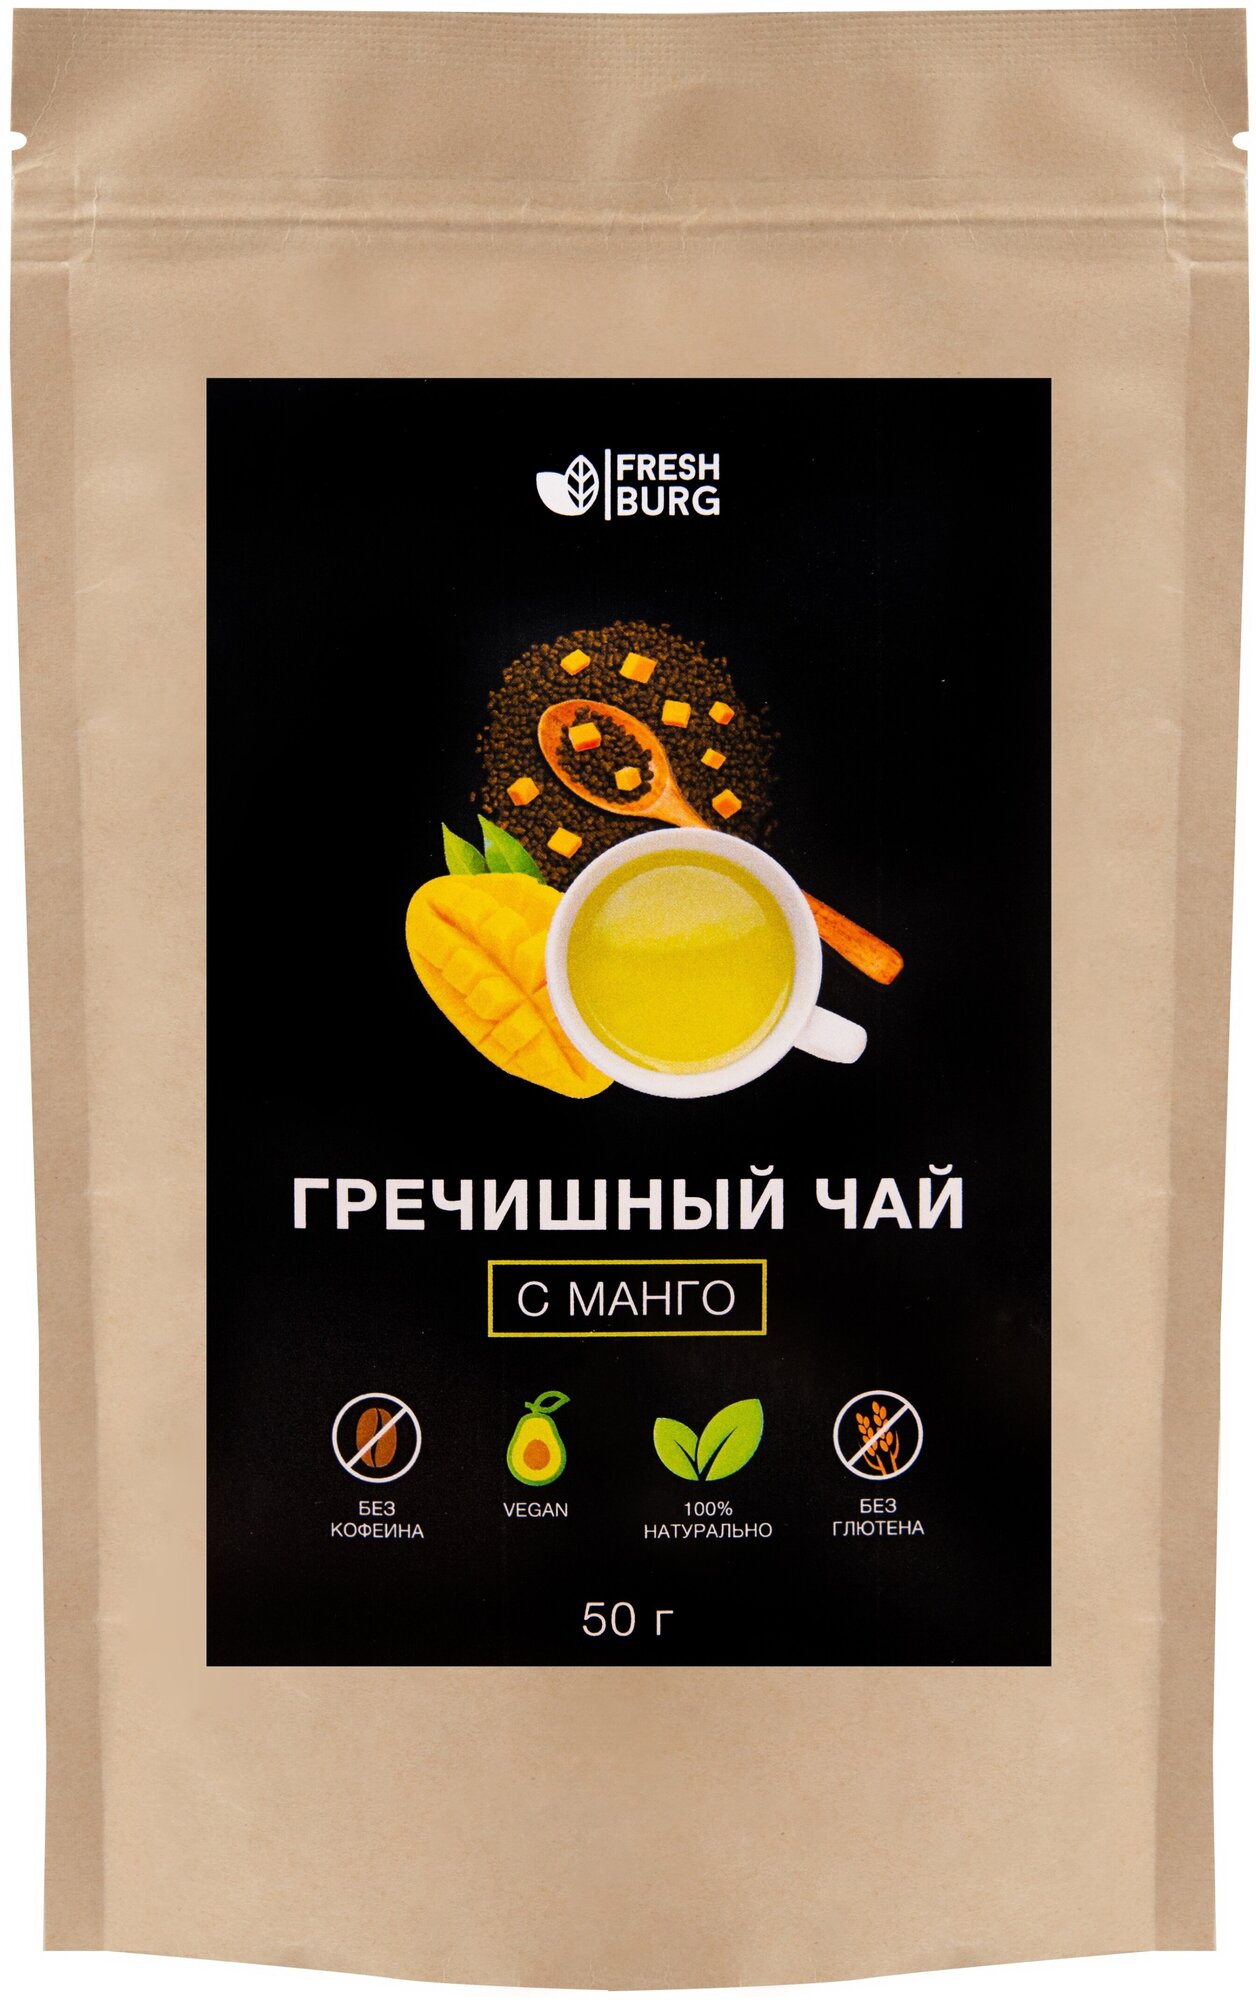 Гречишный чай с манго Premium Freshburg (без кофеина, для похудения) 50 г